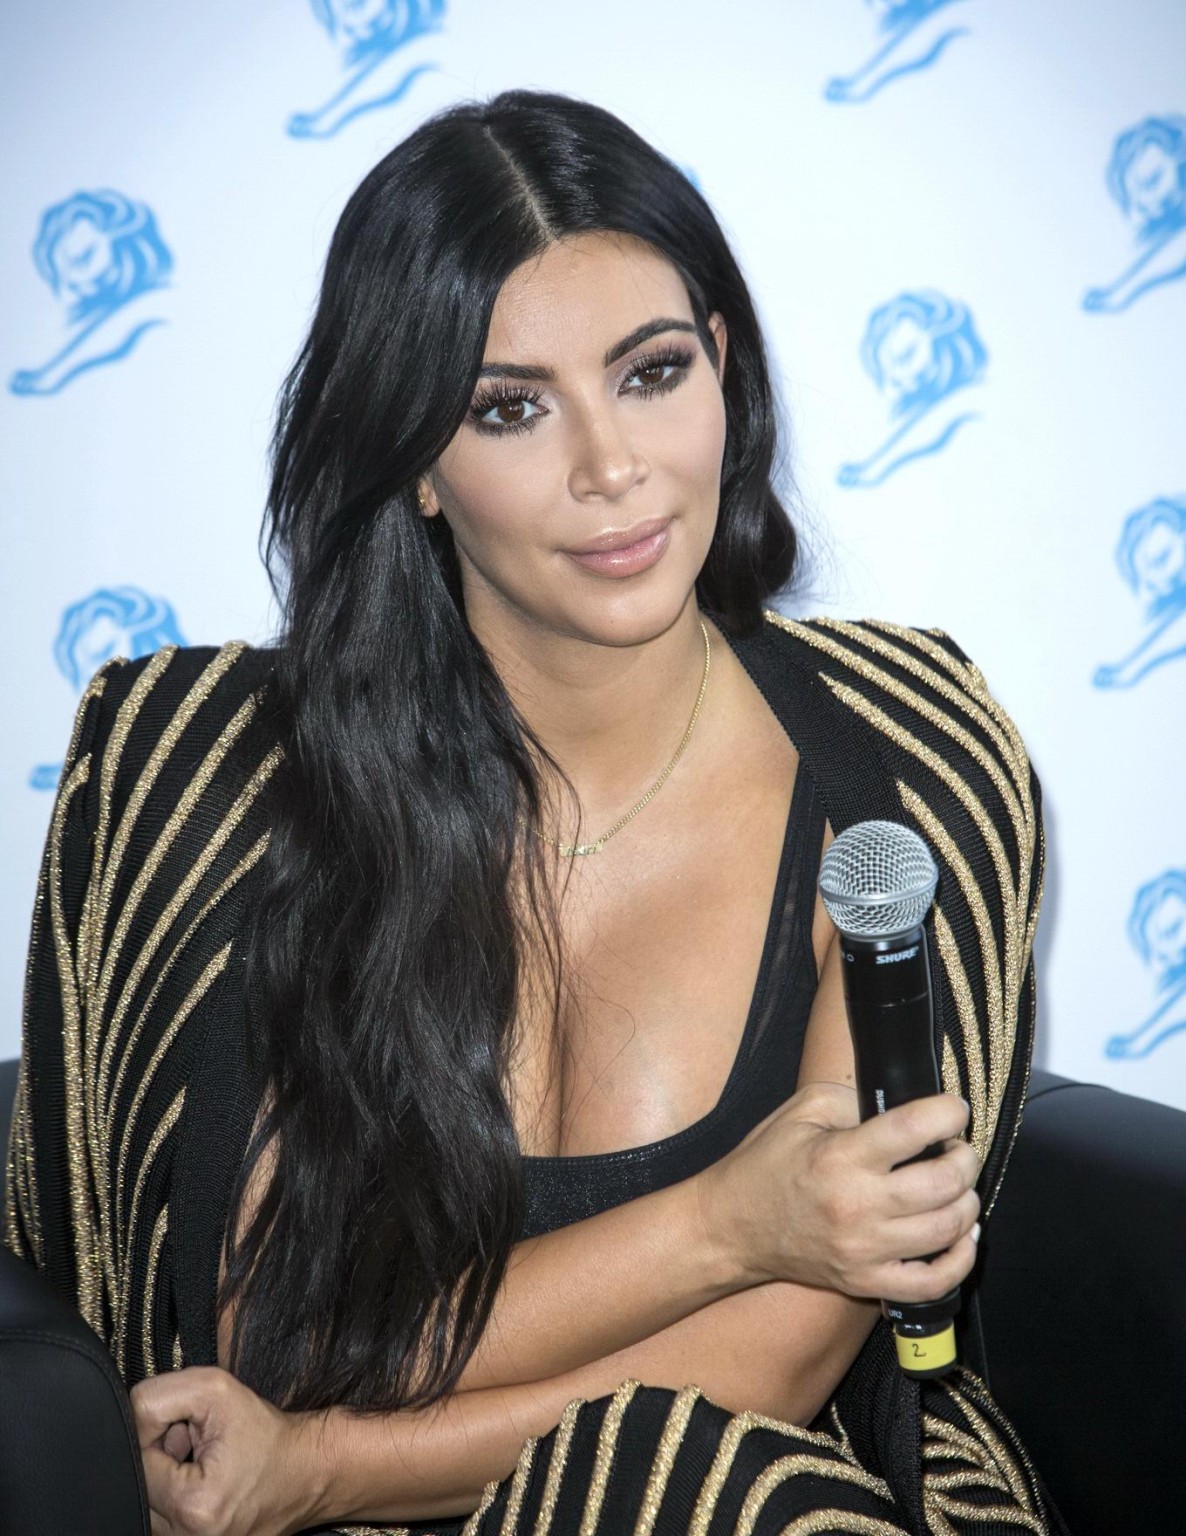 Kim Kardashian zeigt riesiges Dekolleté bei der Cannes-Löwen-Veranstaltung
 #75160336